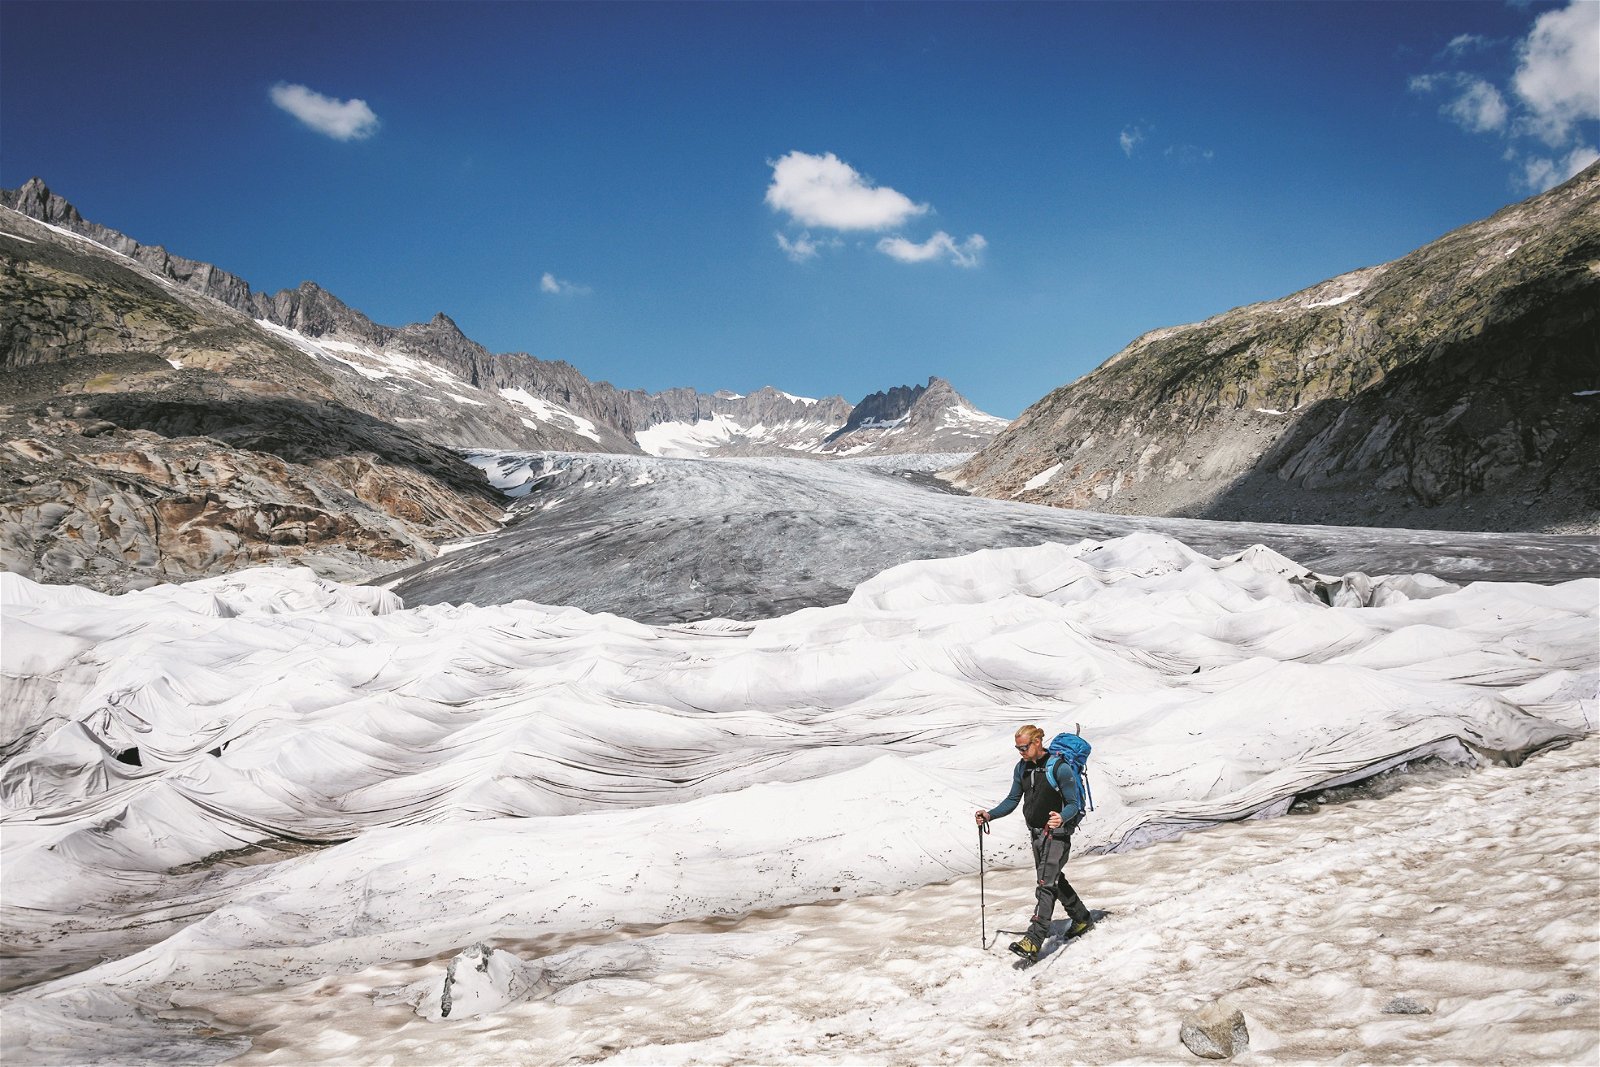 阿尔卑斯山脉最古老的隆河冰川，已被盖上了绝缘泡沫覆盖，以防止阳光直接照射使其溶化。